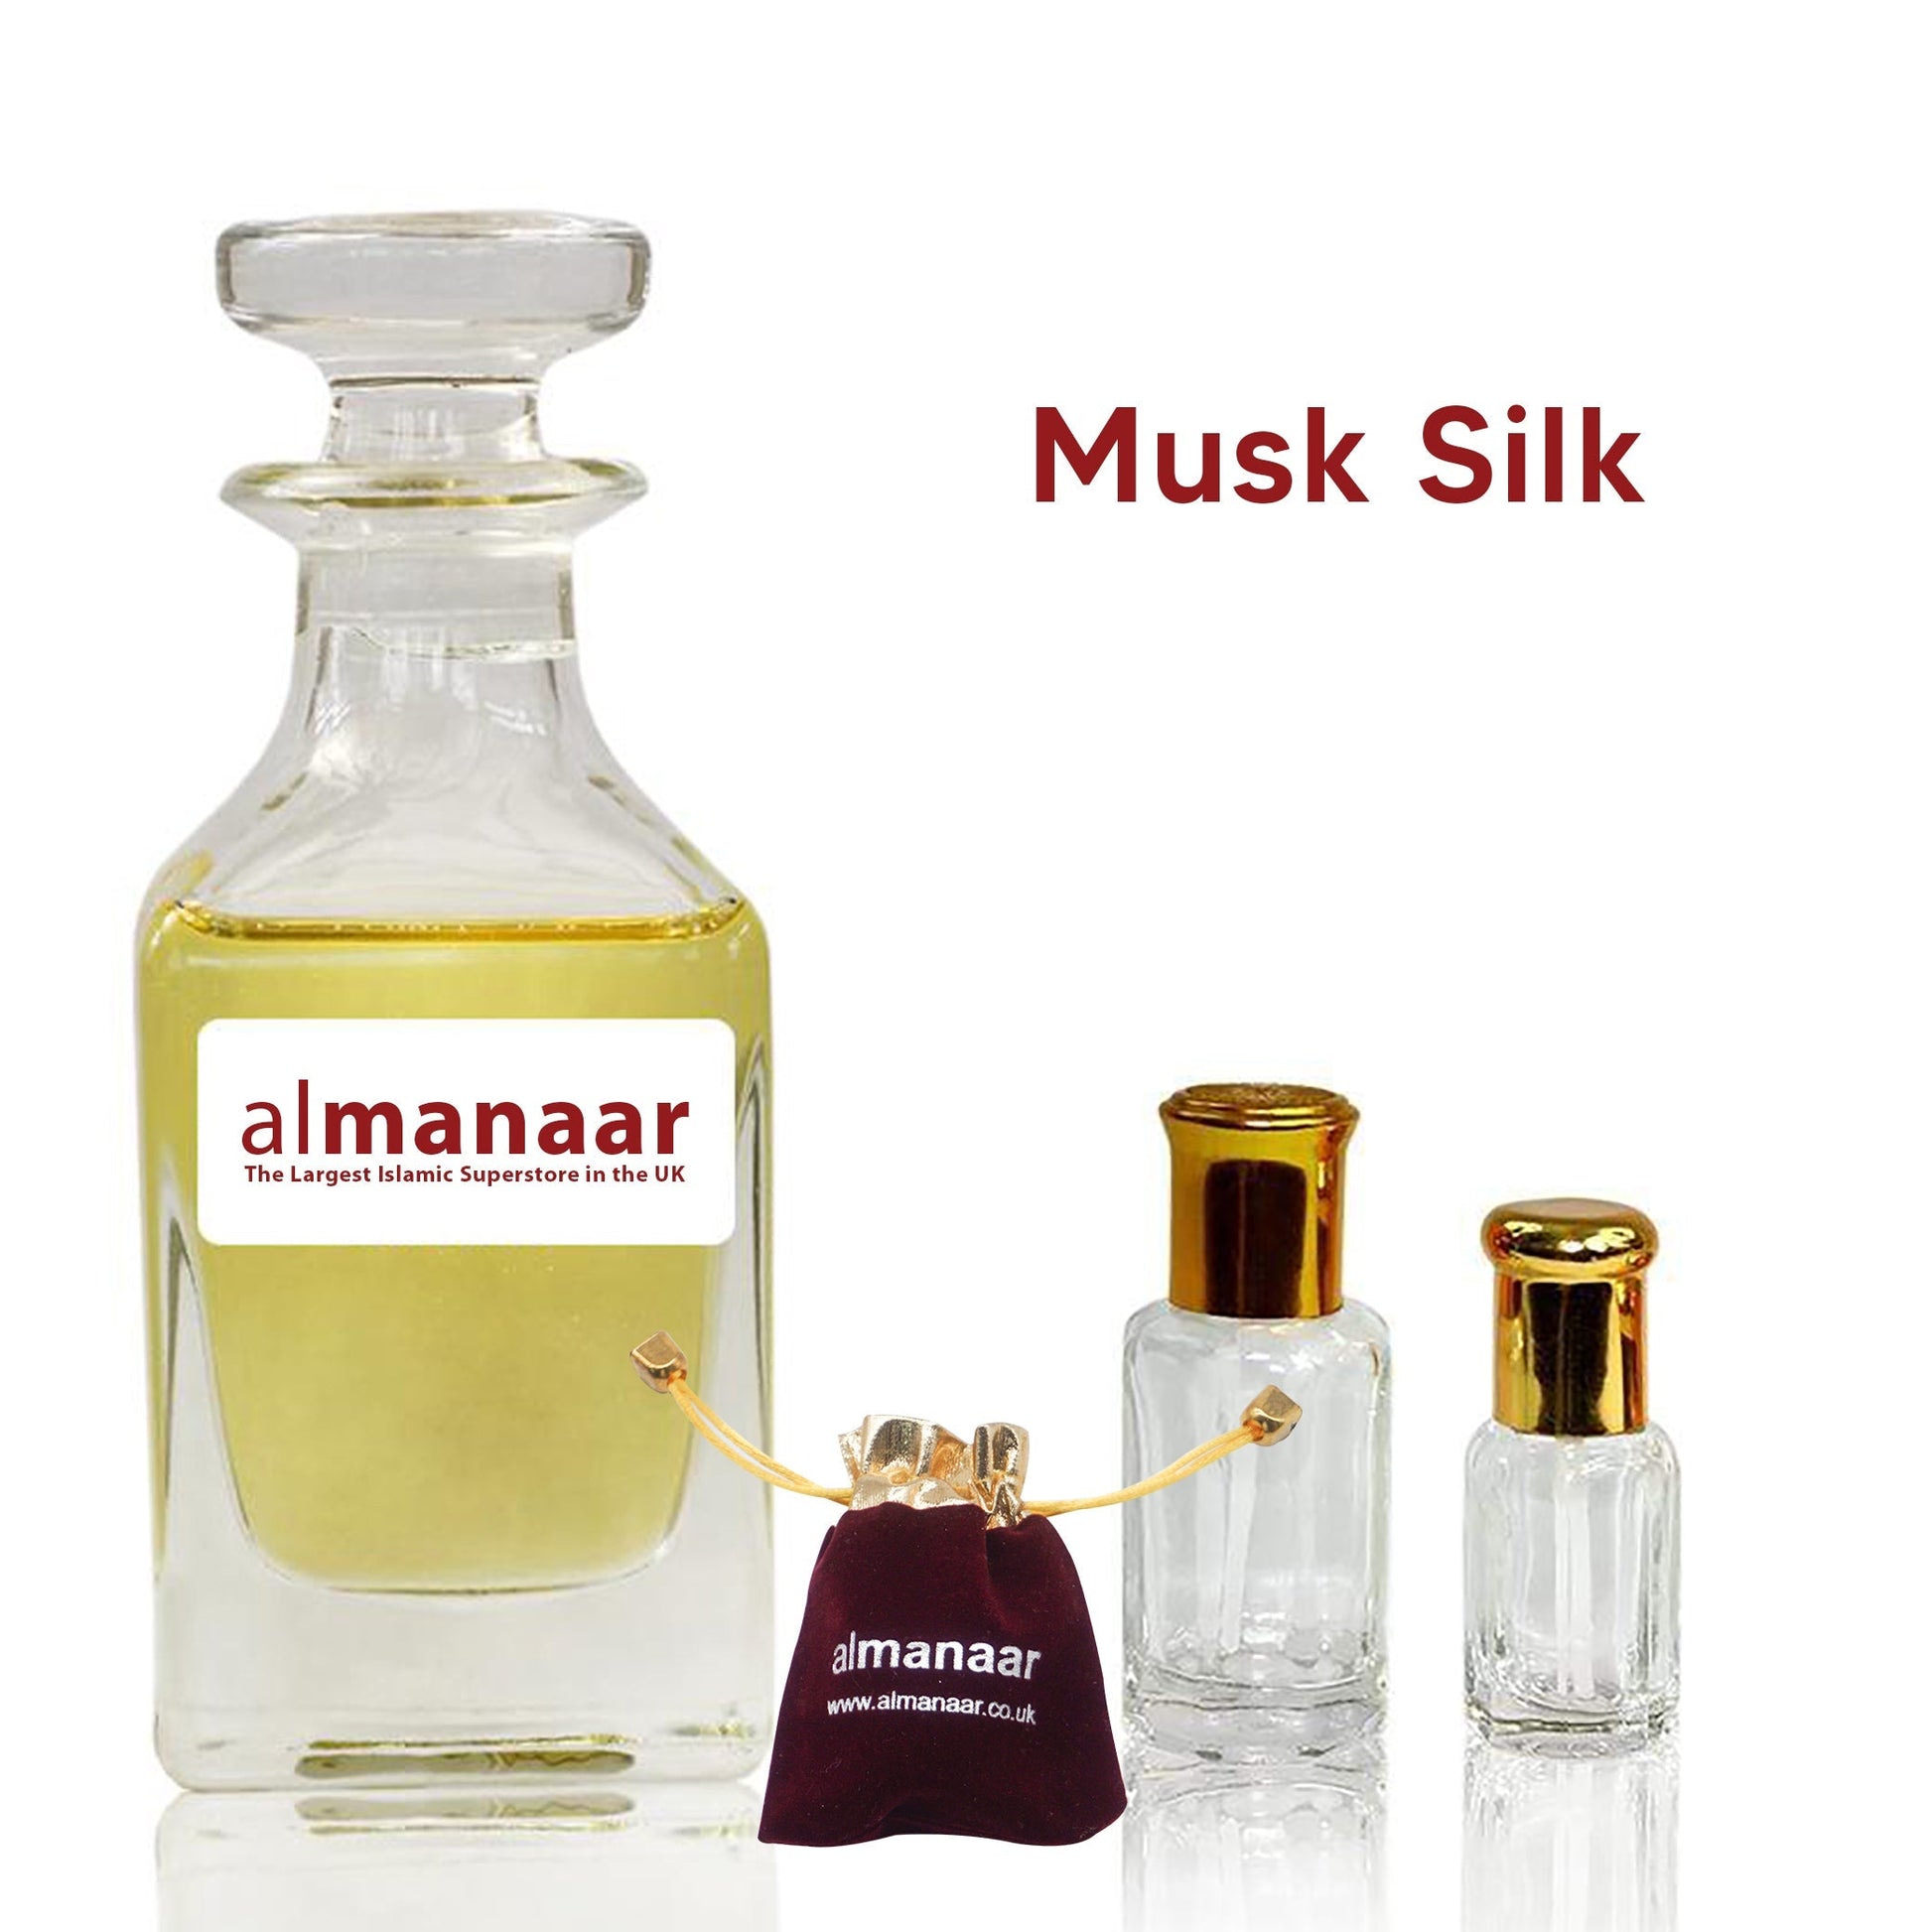 Musk Silk - Concentrated Perfume Oil by almanaar-almanaar Islamic Store